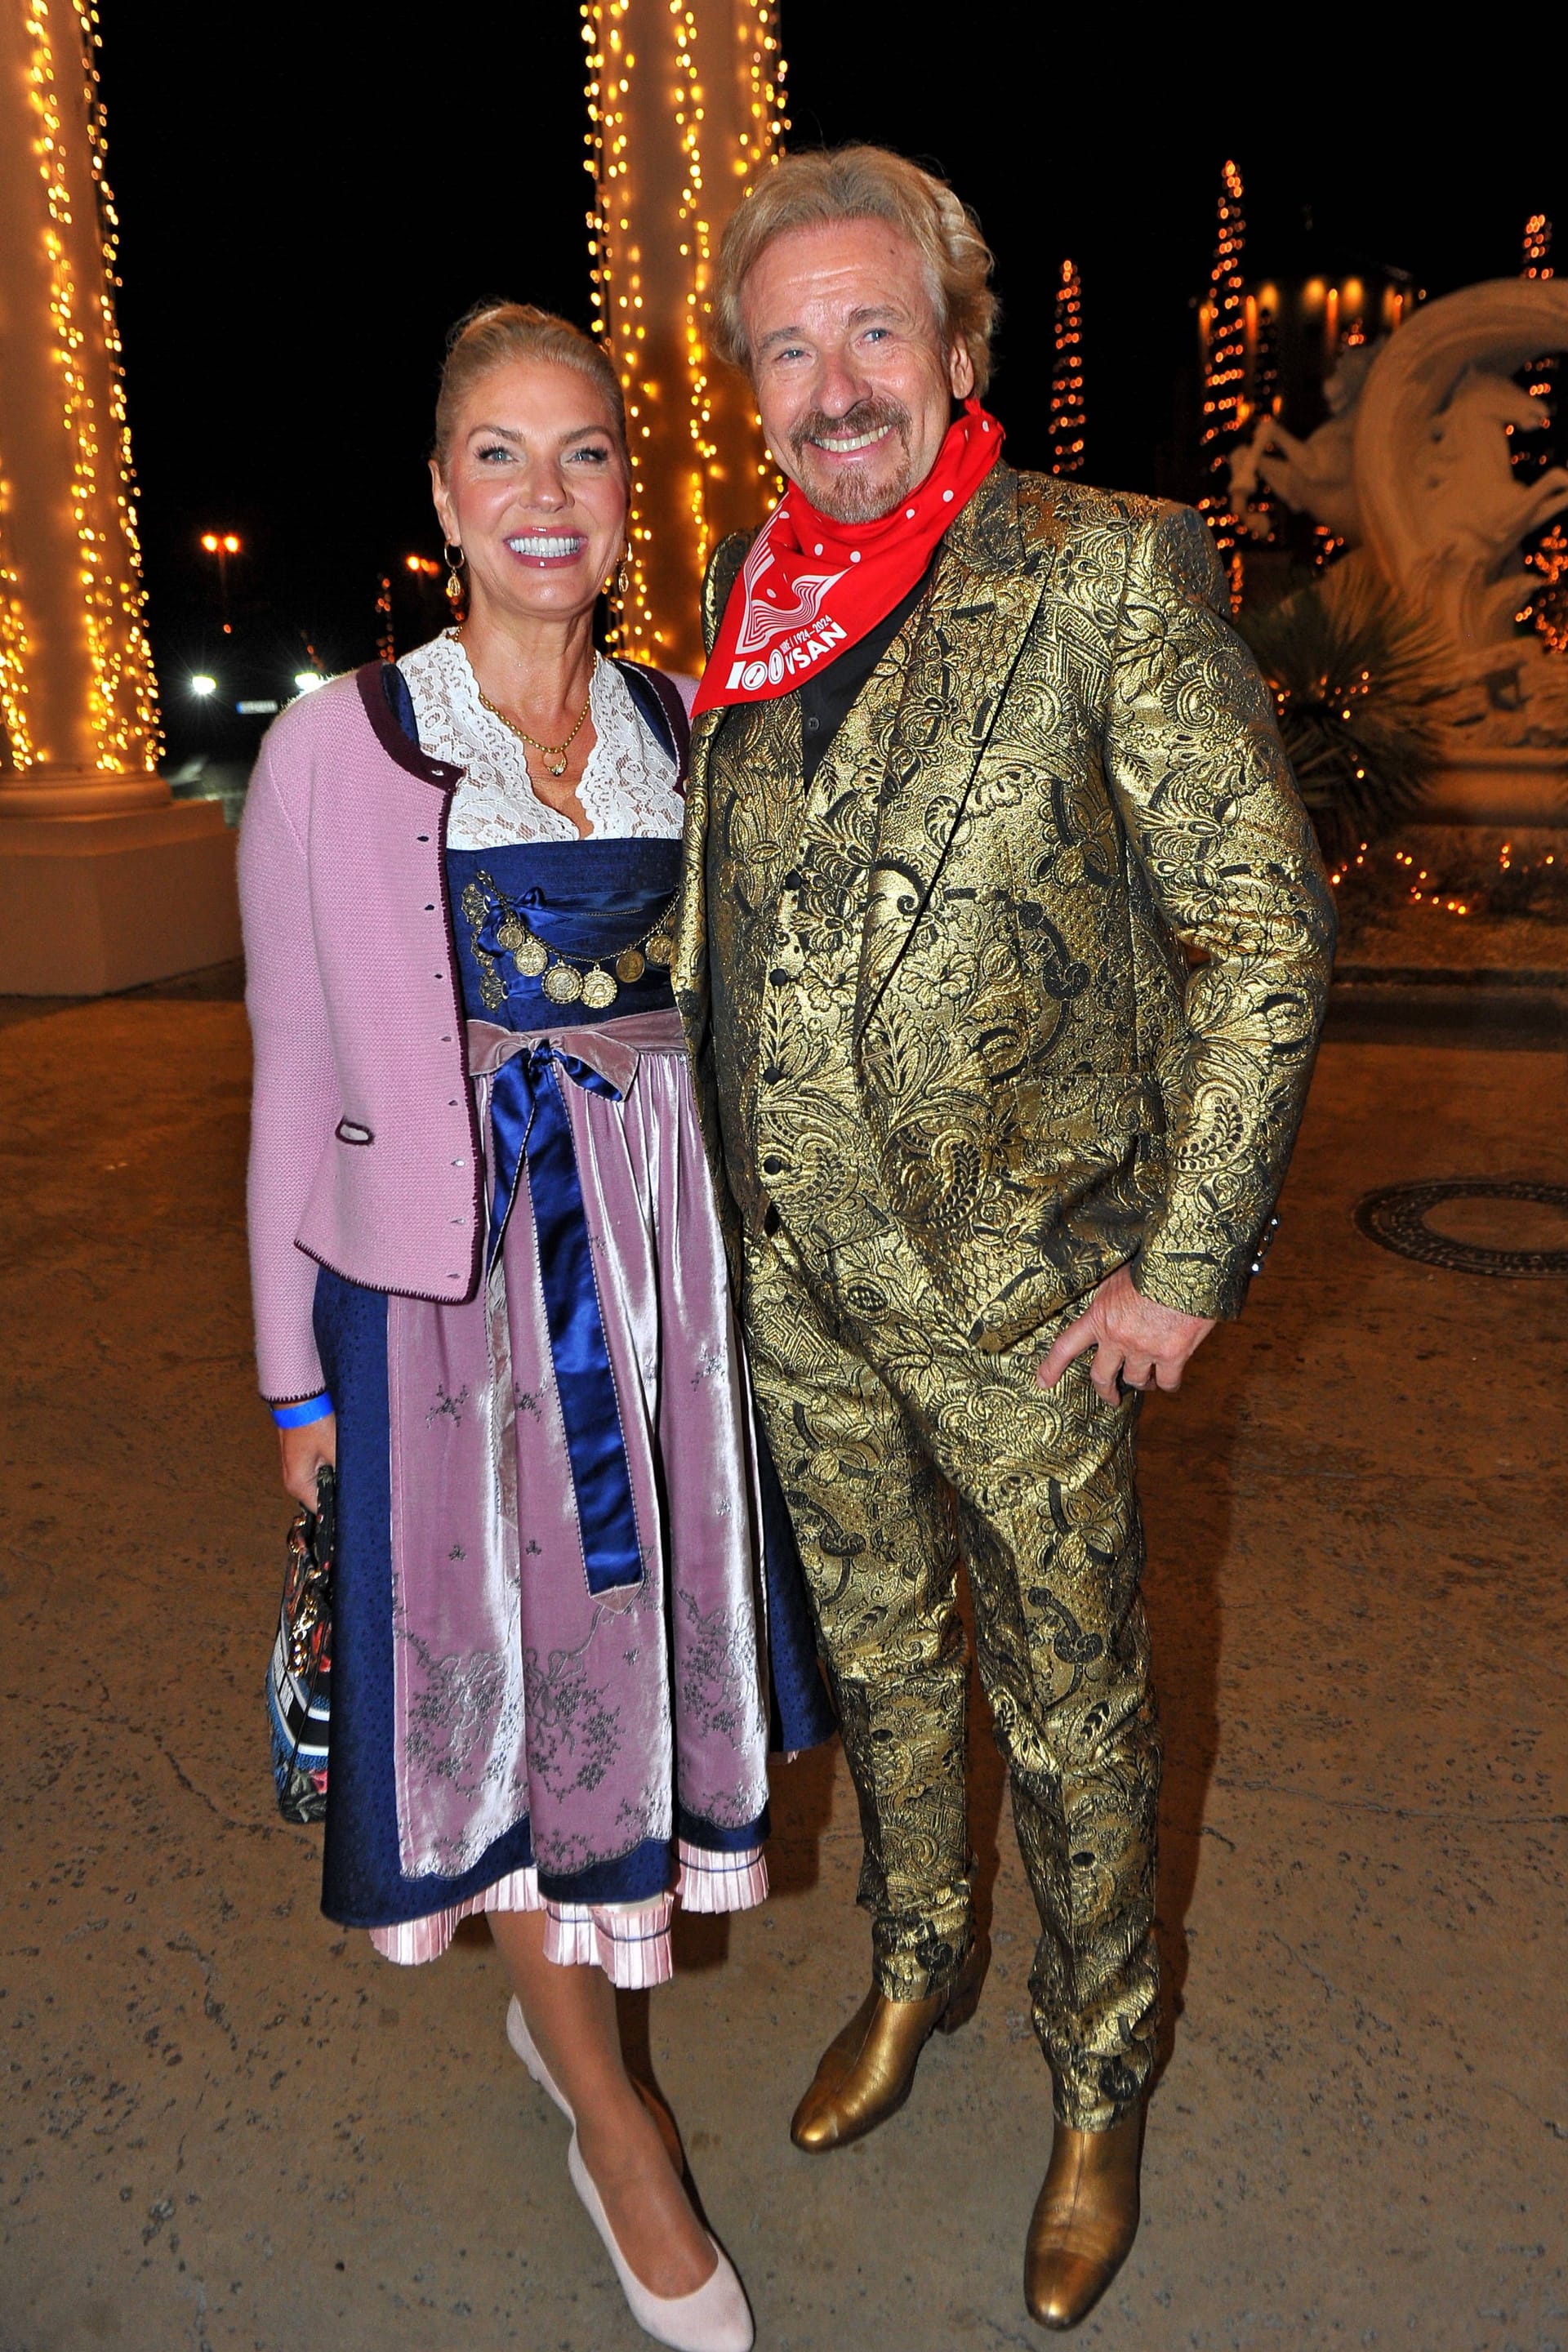 imago images 0398131574Karina Mroß und Thomas Gottschalk: Das Paar war zu Gast bei der Verleihung der Goldenen Narrenschelle in Rust.